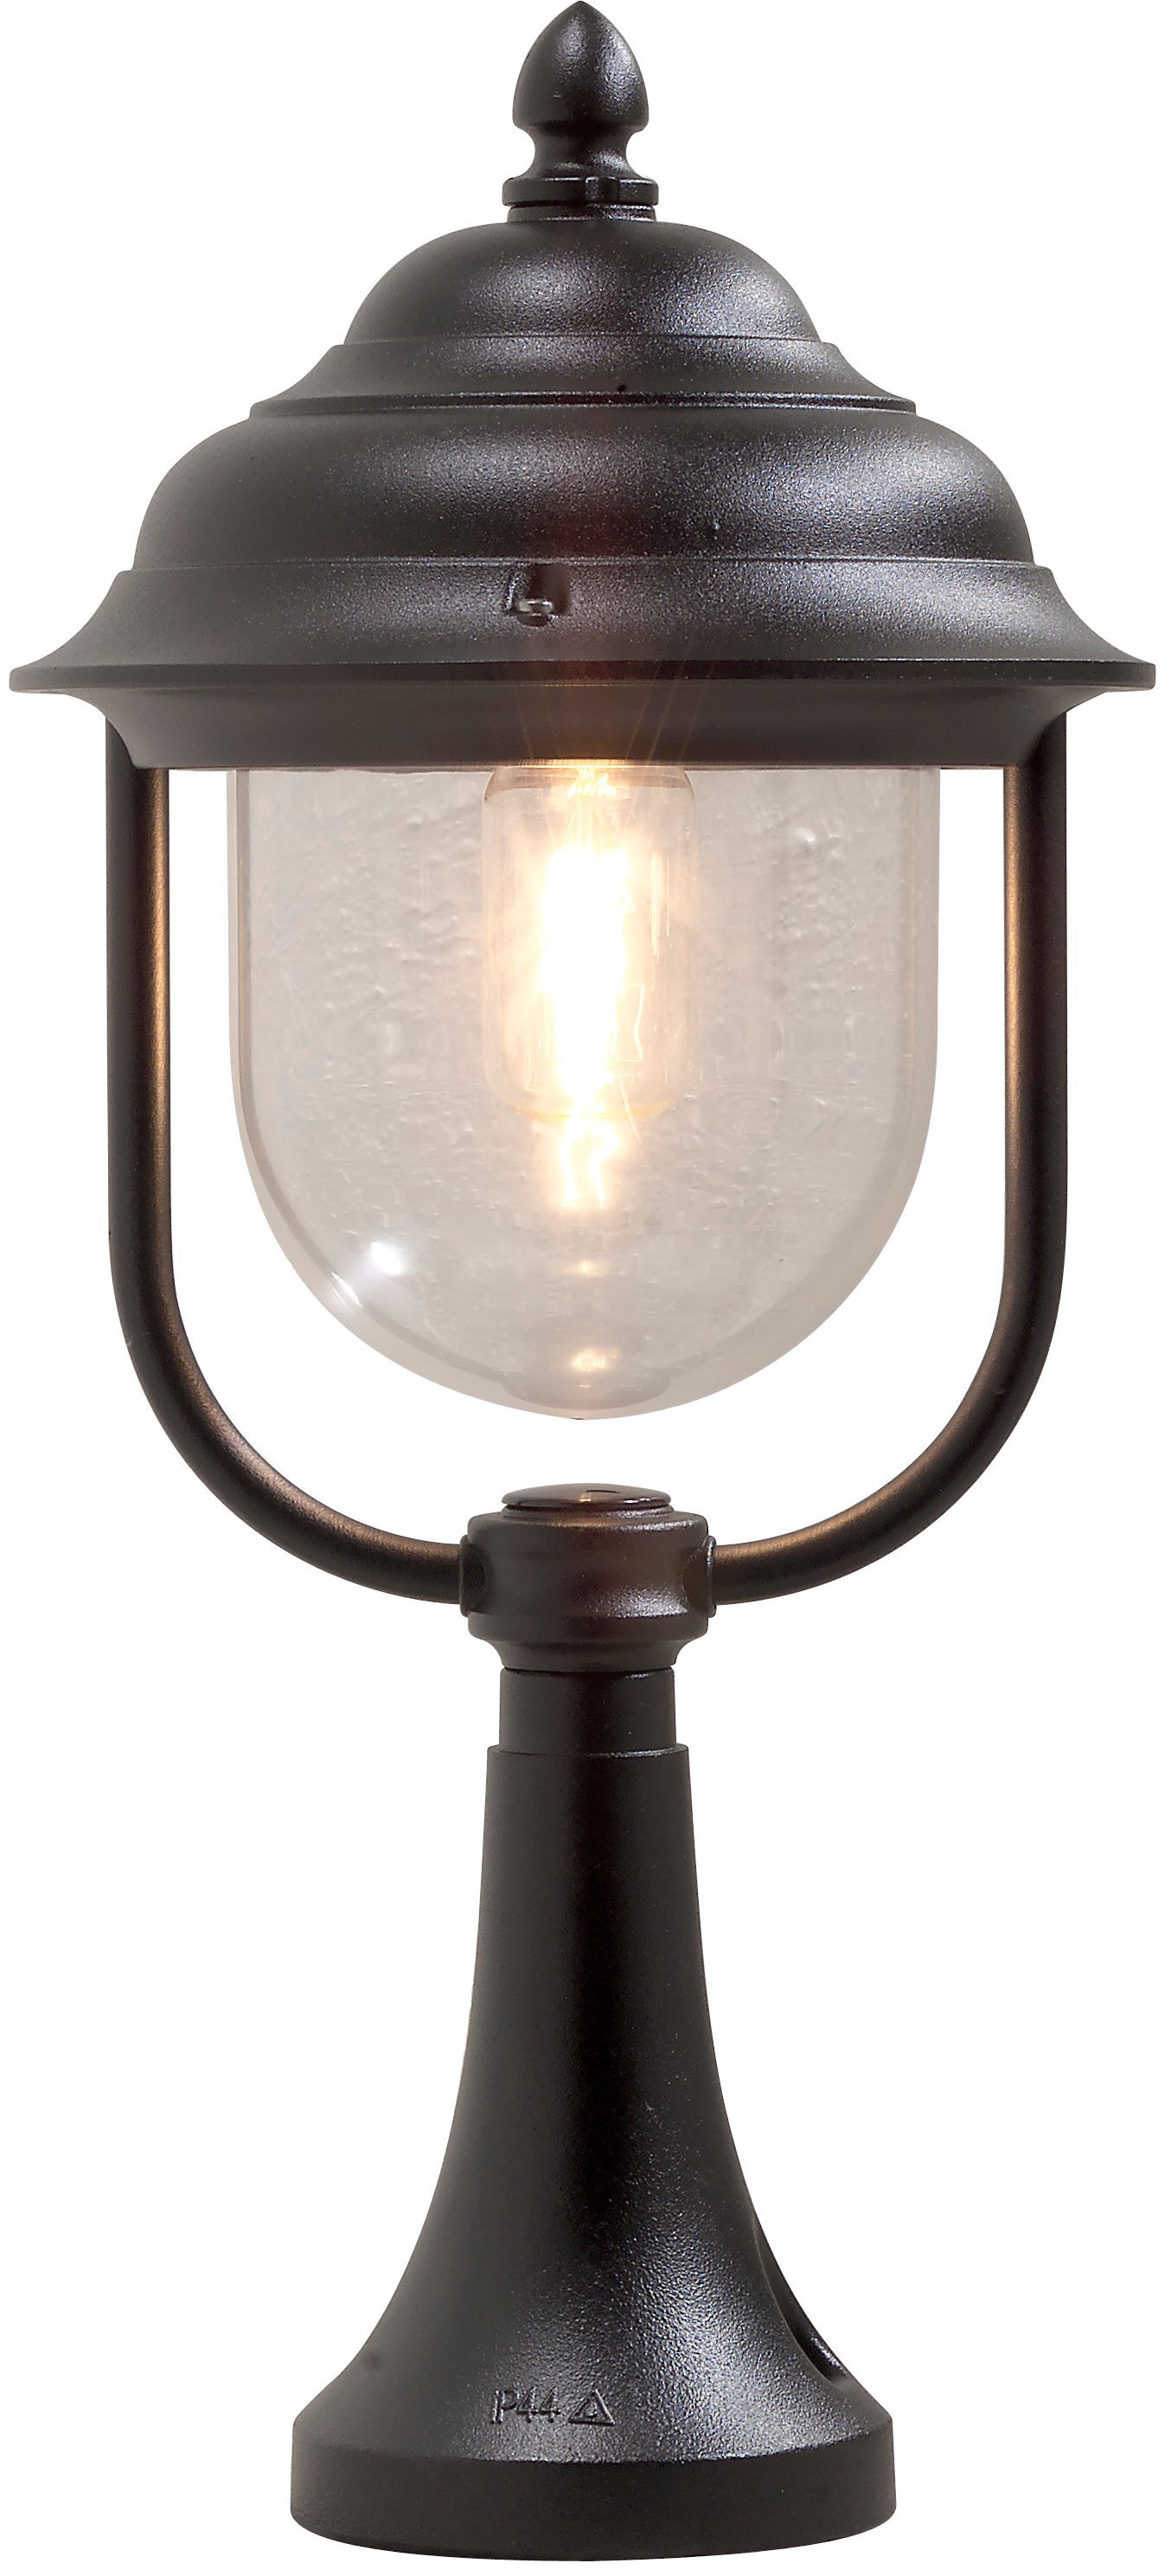 KONSTSMIDE buitenlamp Spaarlamp E27 75 W Parma 7224-750 Zwart